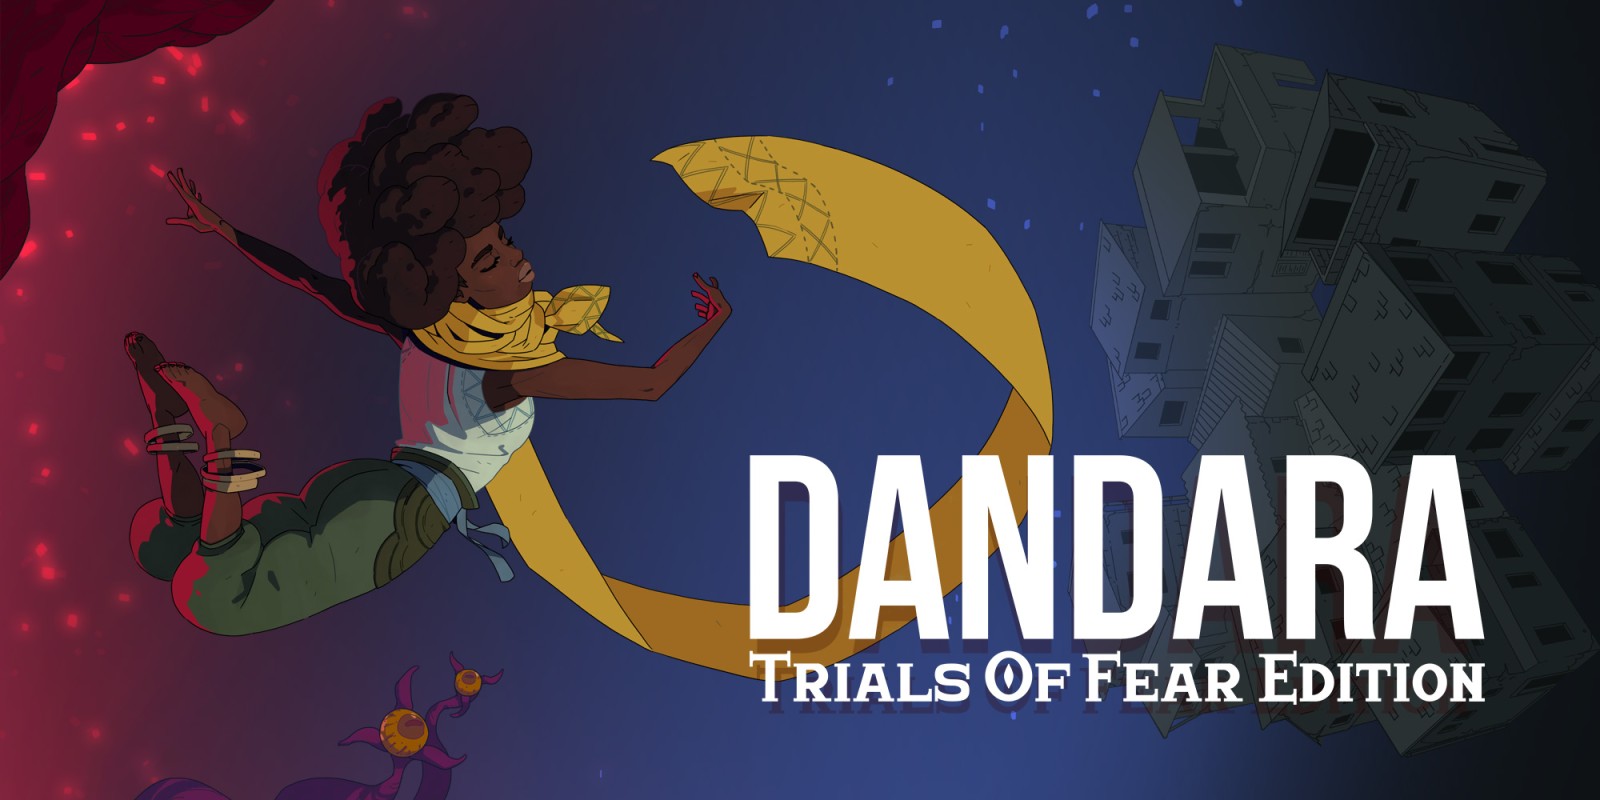 download dandara battle for free